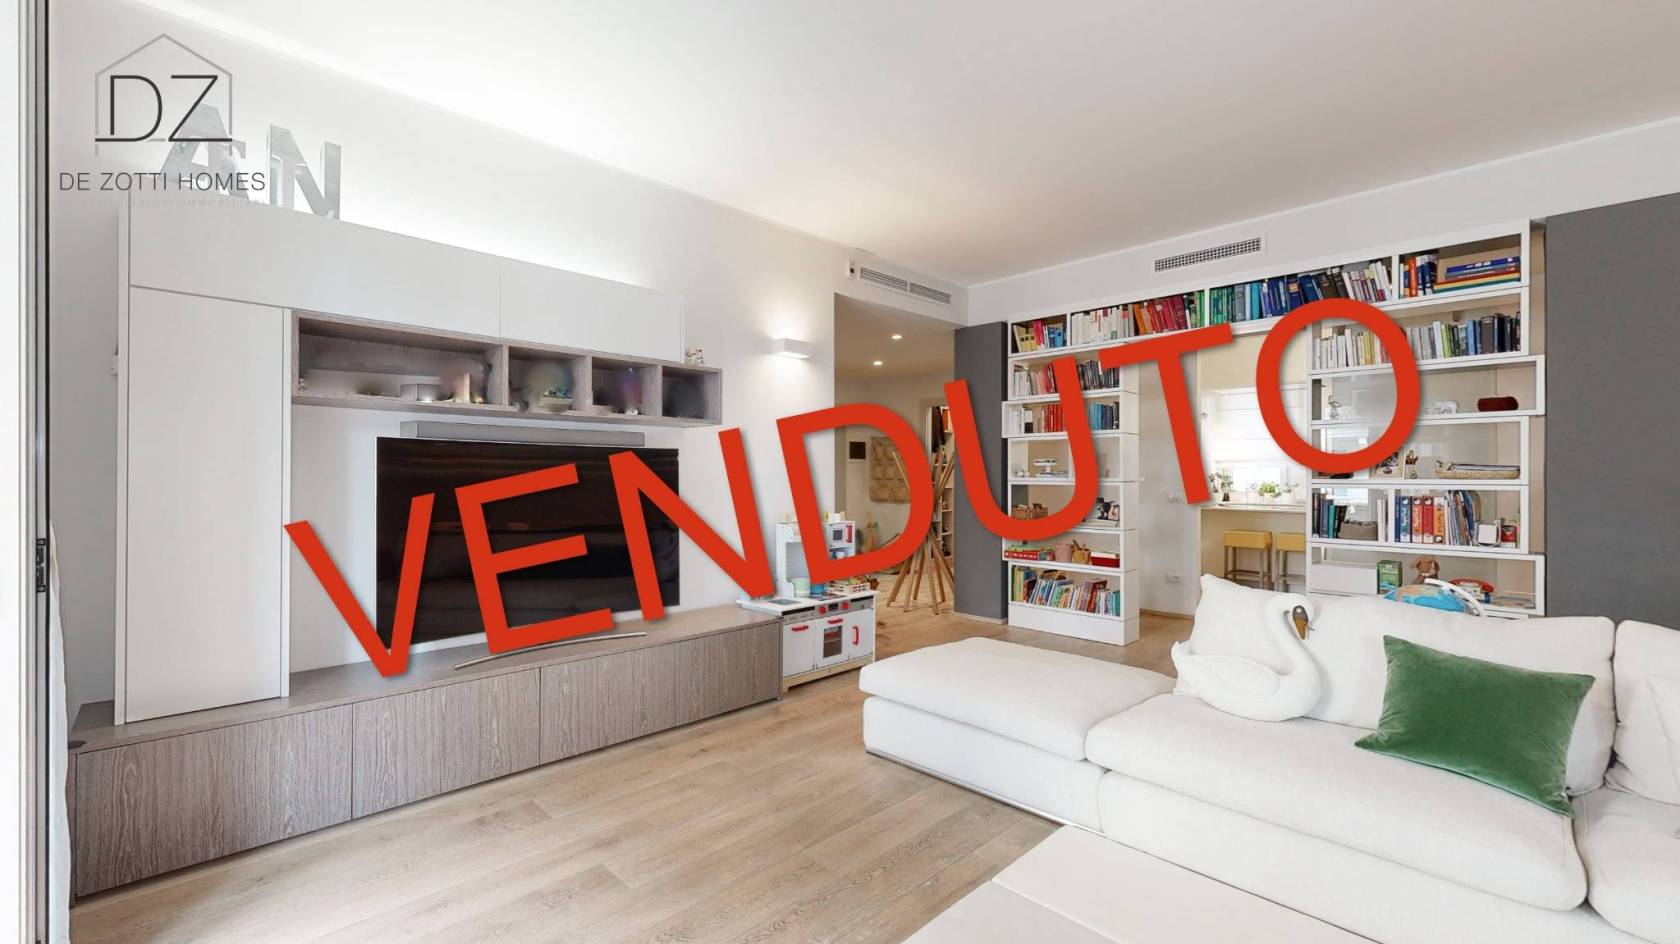 VENDUTO - Via Imbriani 15, proponiamo in vendita un appartamento finemente ristrutturato di circa 159 mq. L'appartamento si compone da ingresso, 